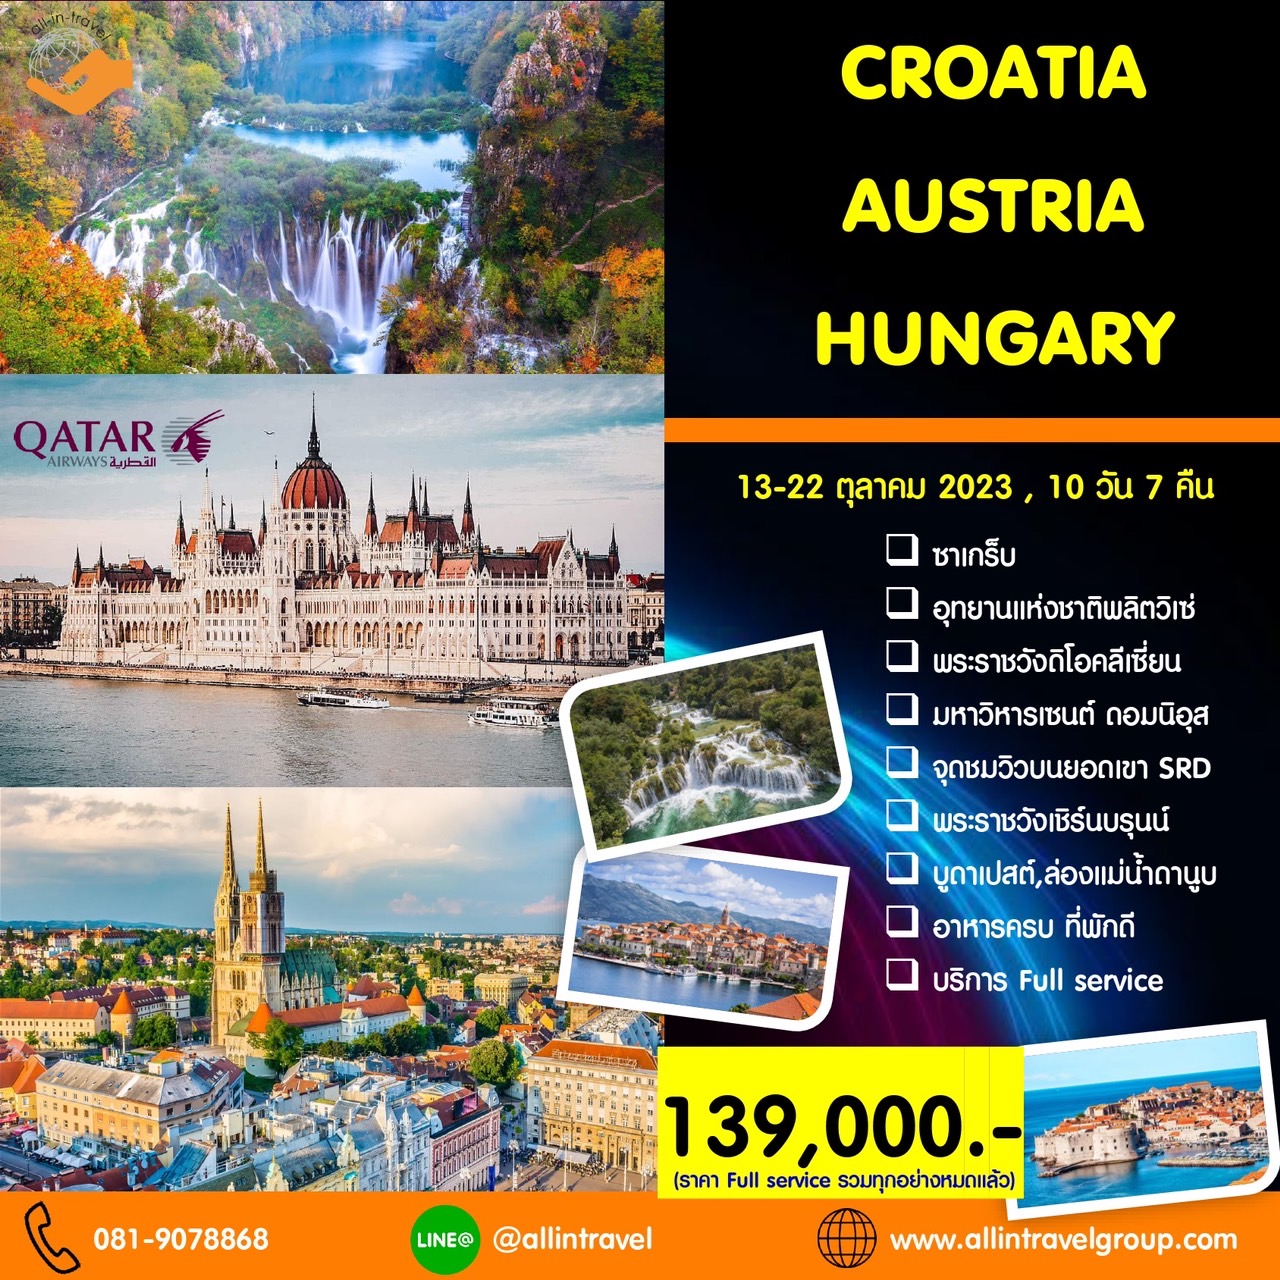 Hungary – Croatia – Austria 